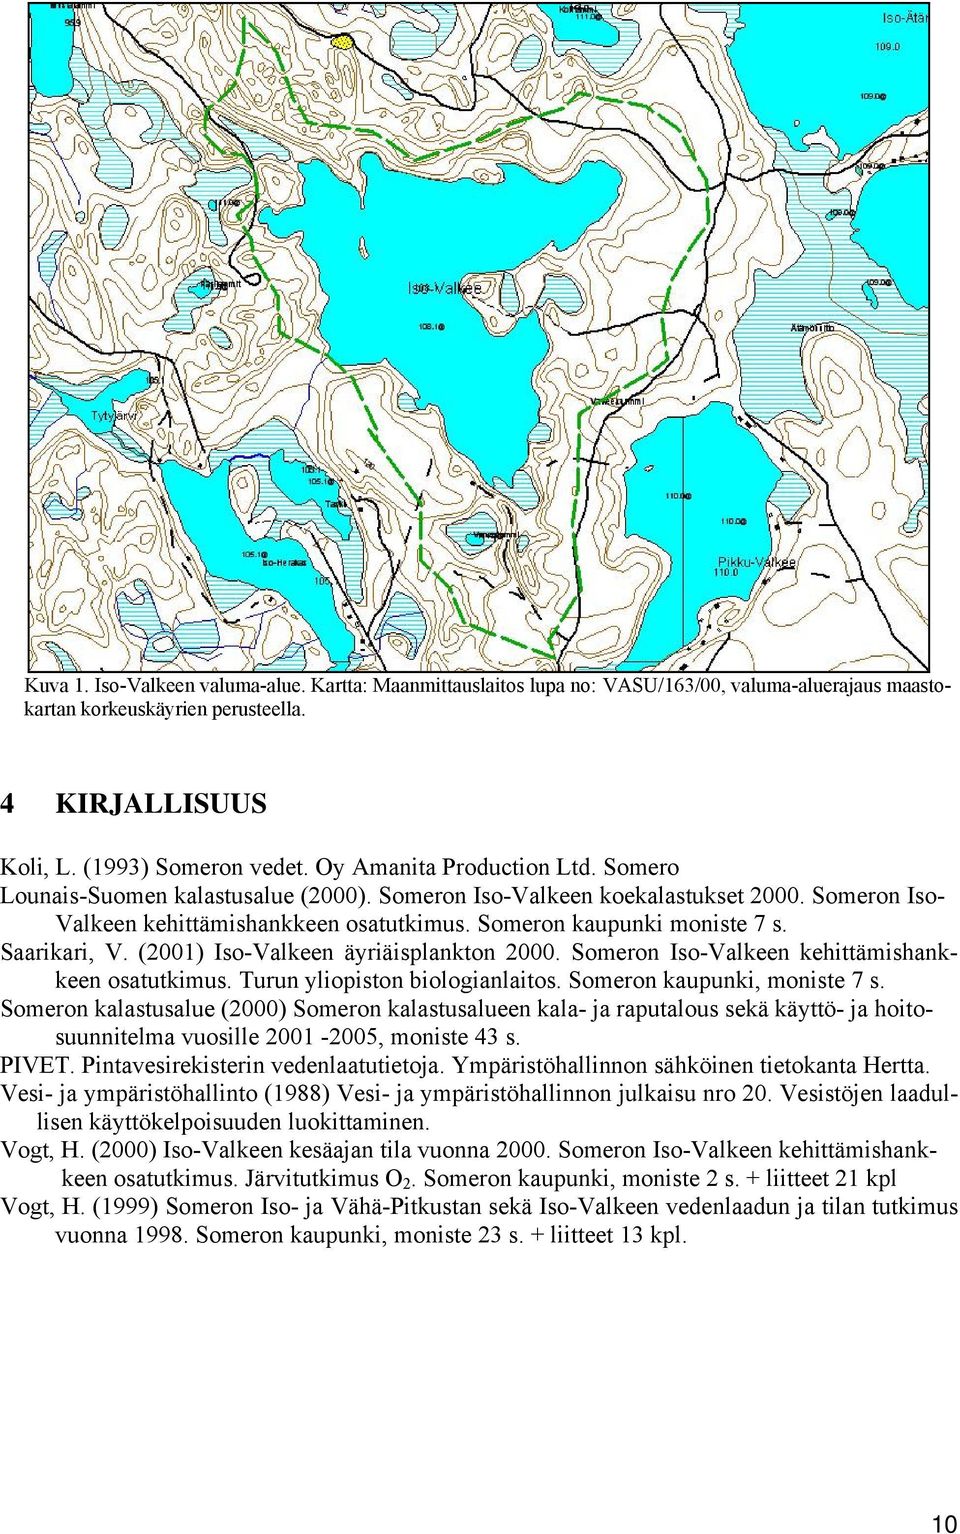 Saarikari, V. (2001) Iso-Valkeen äyriäisplankton 2000. Someron Iso-Valkeen kehittämishankkeen osatutkimus. Turun yliopiston biologianlaitos. Someron kaupunki, moniste 7 s.